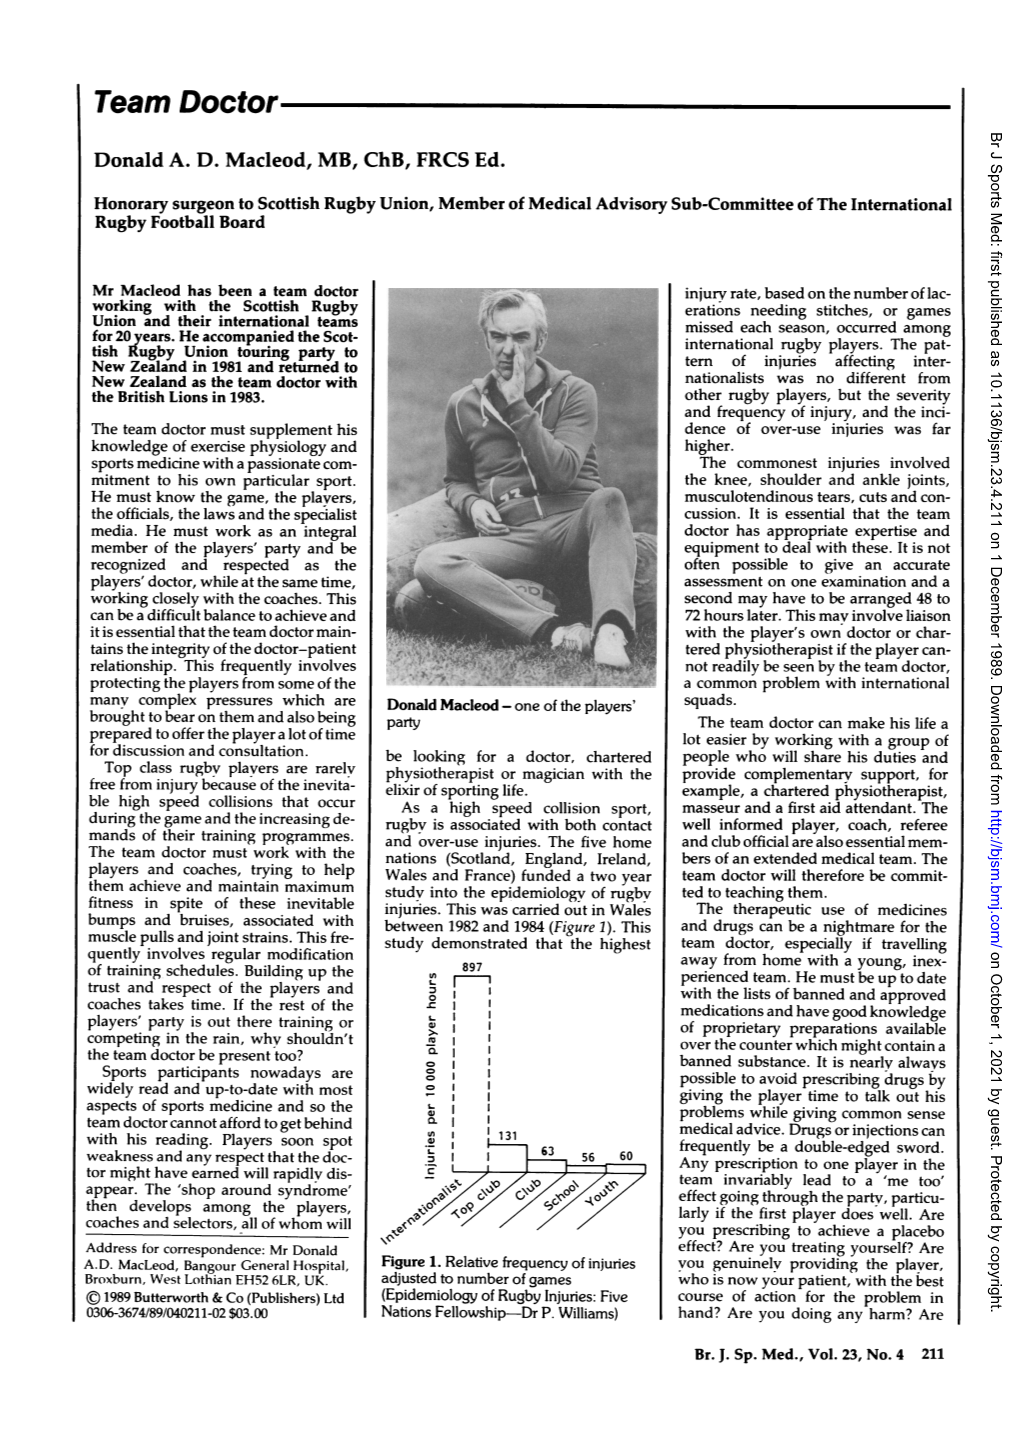 Team Doctor Br J Sports Med: First Published As 10.1136/Bjsm.23.4.211 on 1 December 1989